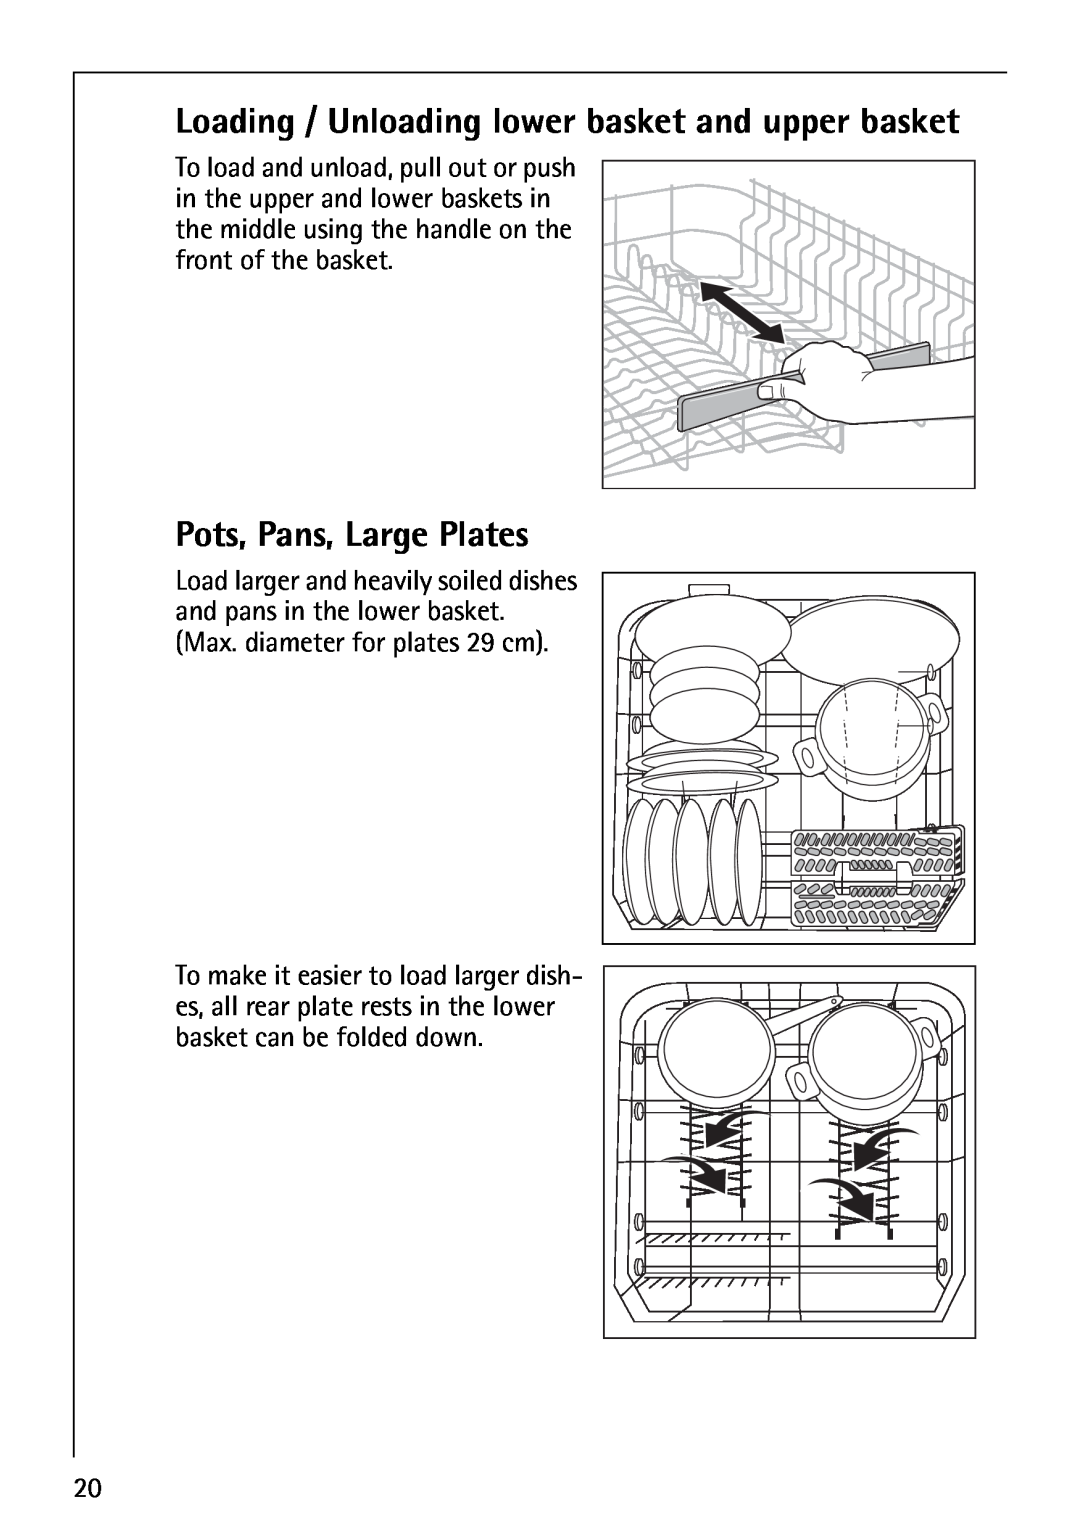 Electrolux FAVORIT 80860 manual Pots, Pans, Large Plates, Loading / Unloading lower basket and upper basket 